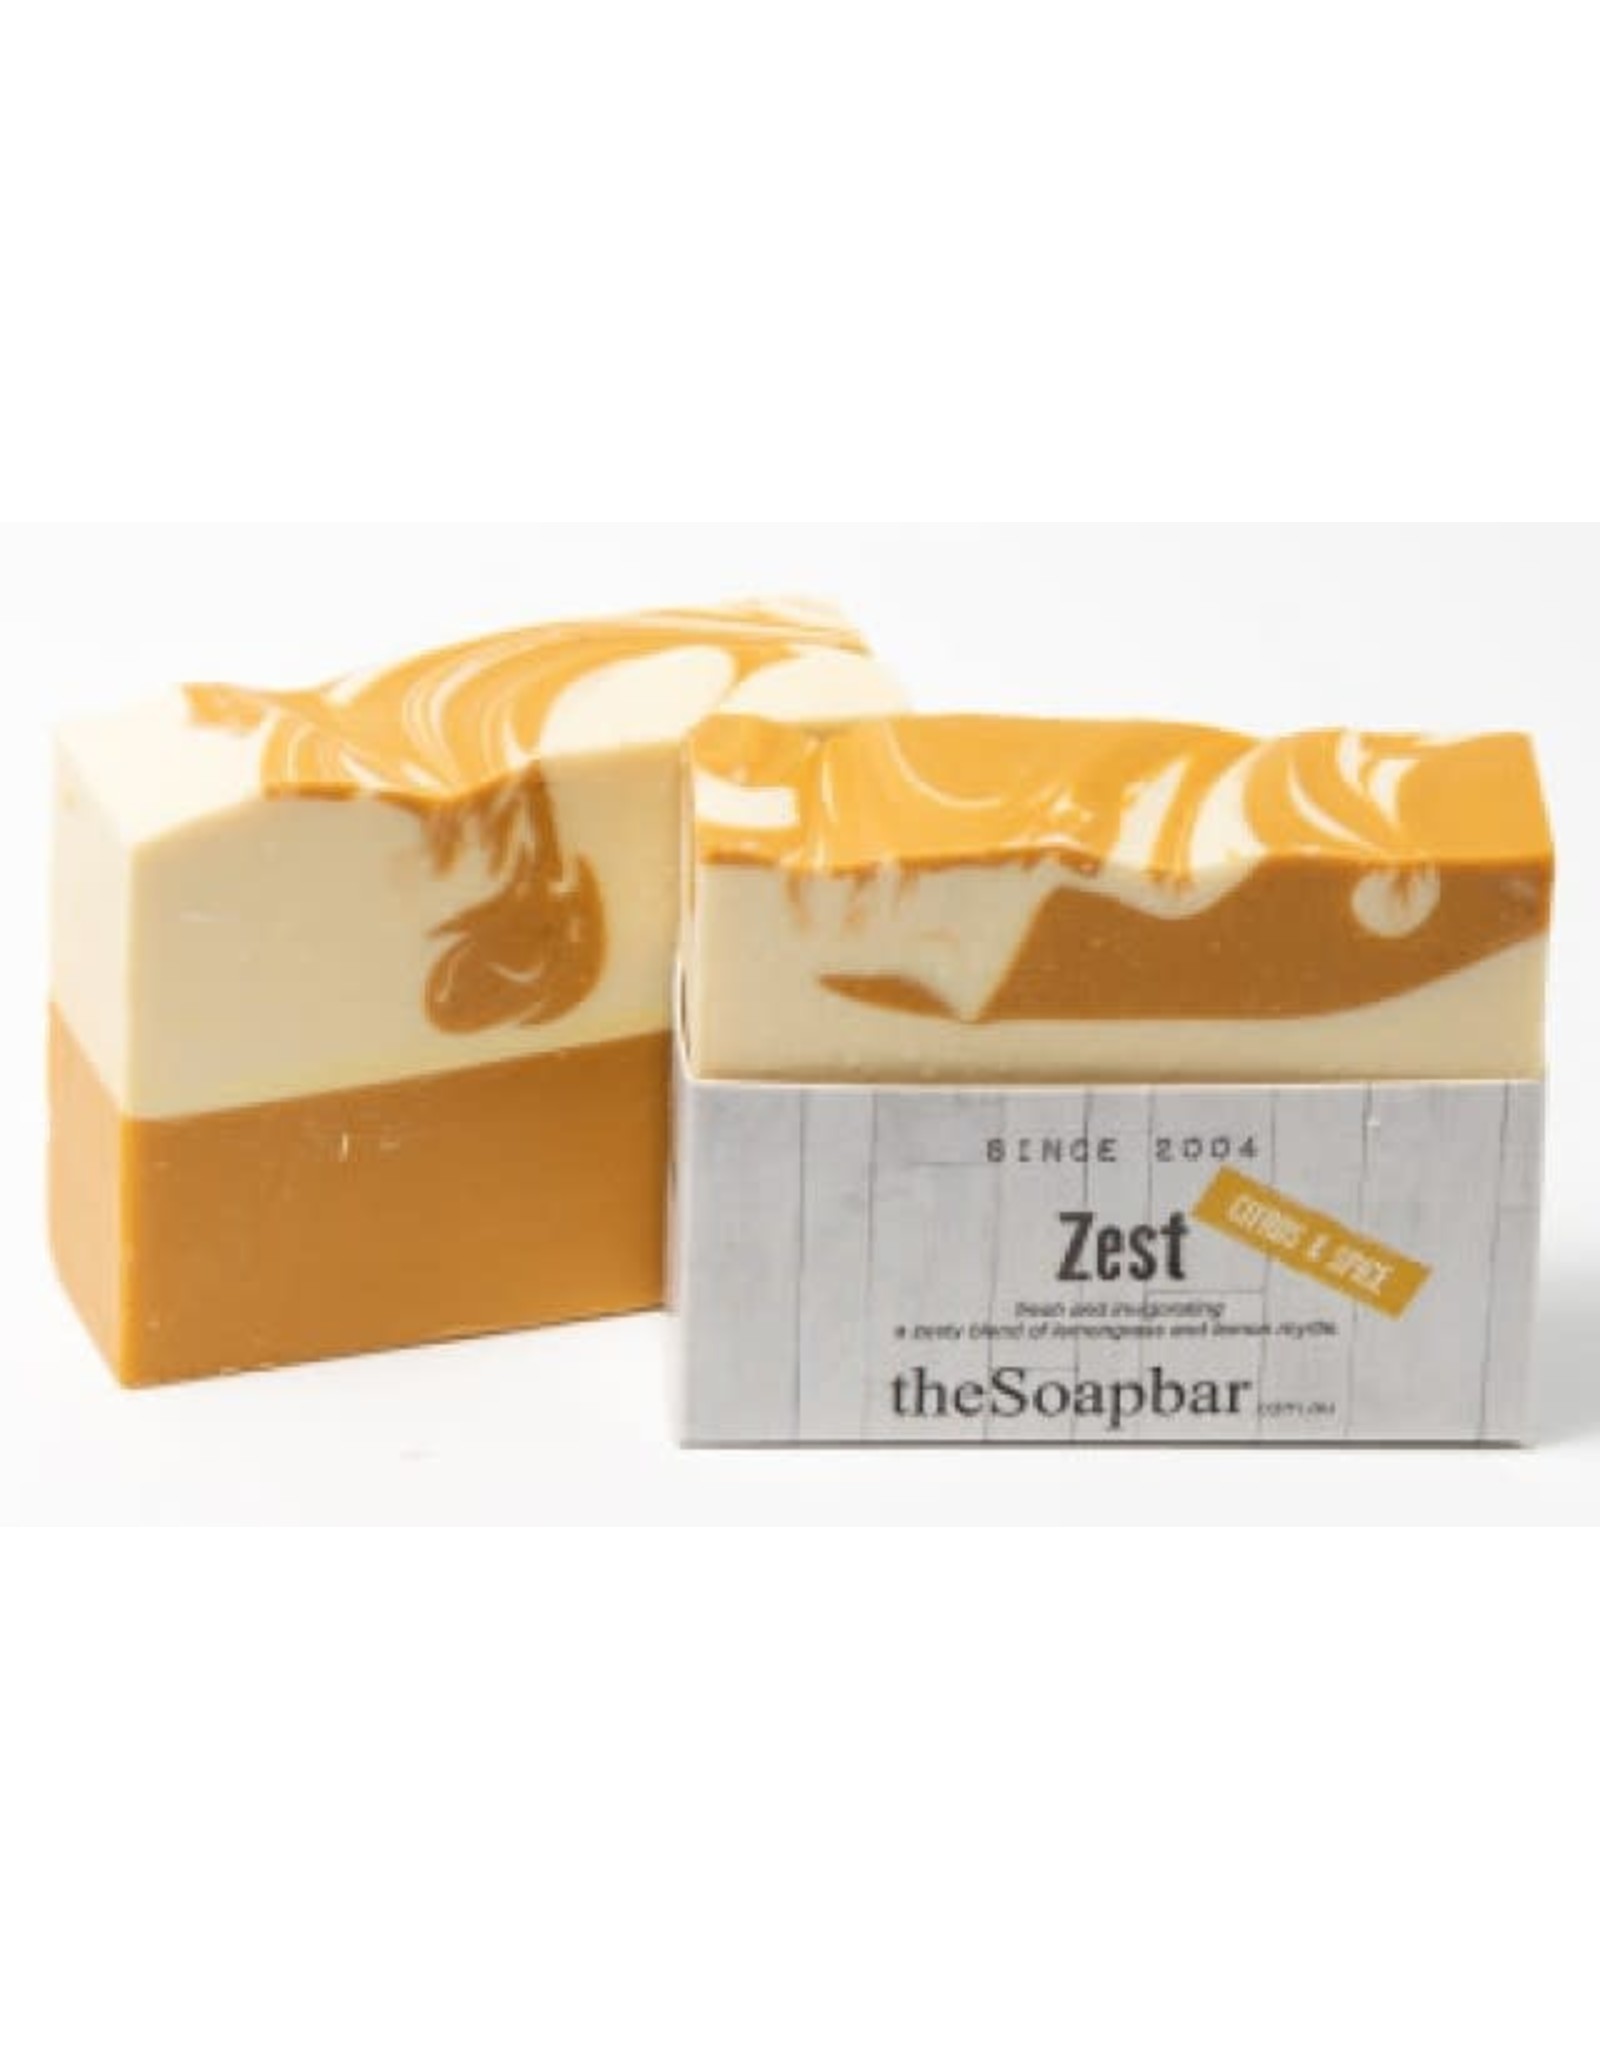 The Soap Bar Zest Soap